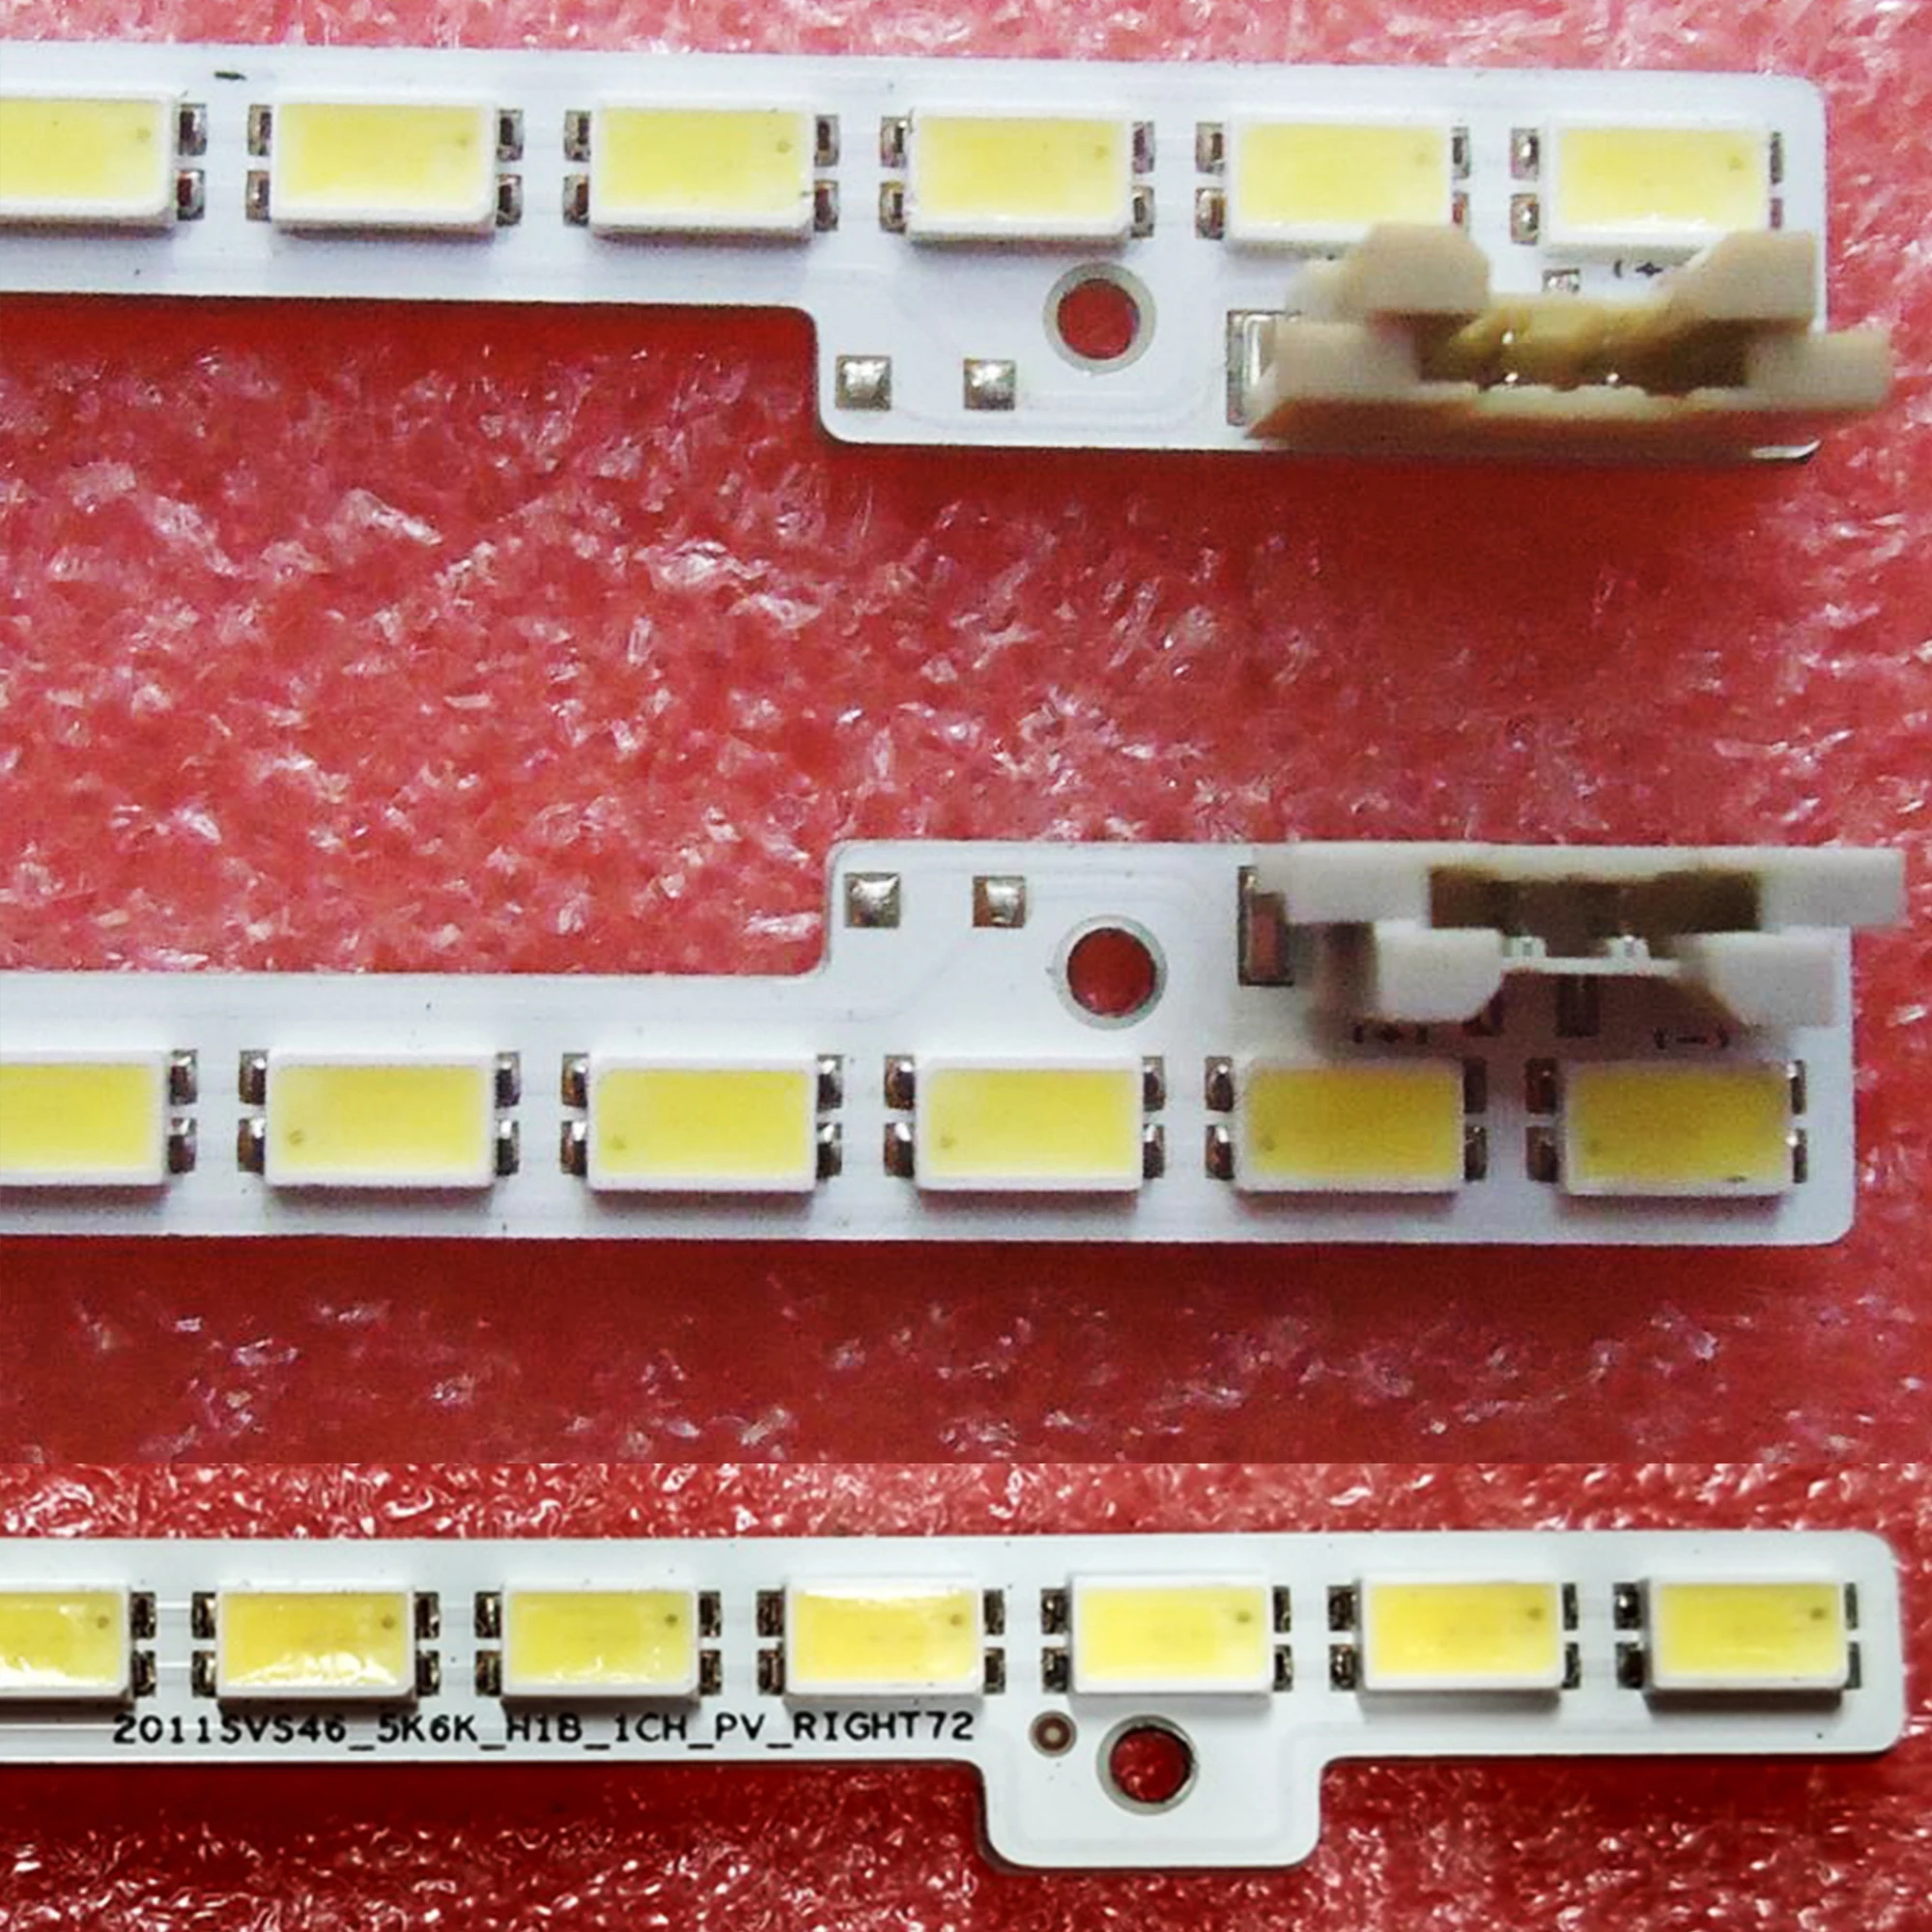 TV Lamps LED Backlight Strips For Samsung UE46D5000 UE46D5500 LED Bars 2011SVS46-FHD-5K6K-LEFT Bands Rulers 2011SVS46_5K6K_H1B brand new tv lamps led backlight strips for dexp h32b7200t hd tv bars kit led bands 4708 k320wd a4213k01 kb 6160 k320wd rulers